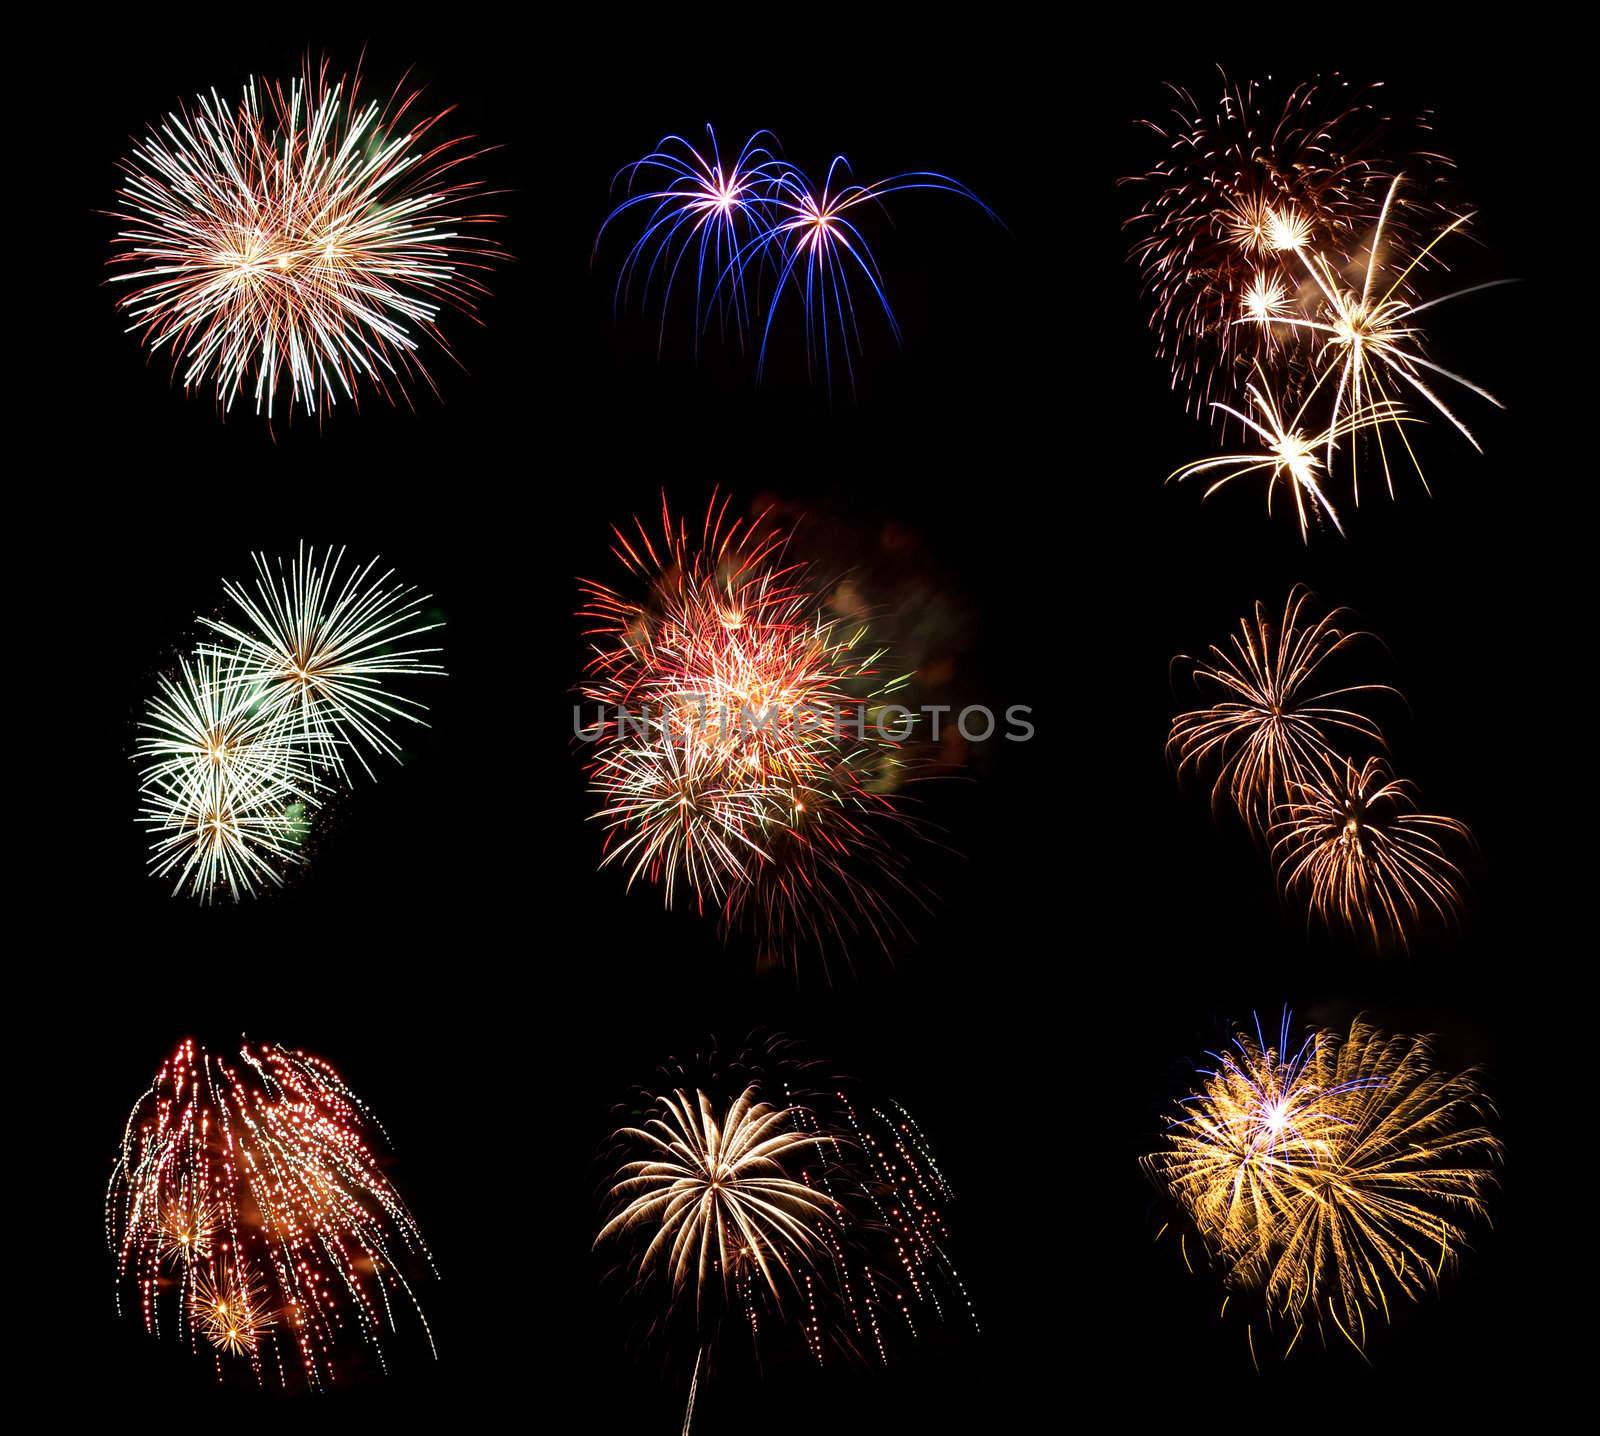 Compilation of Fireworks Against a Black Sky